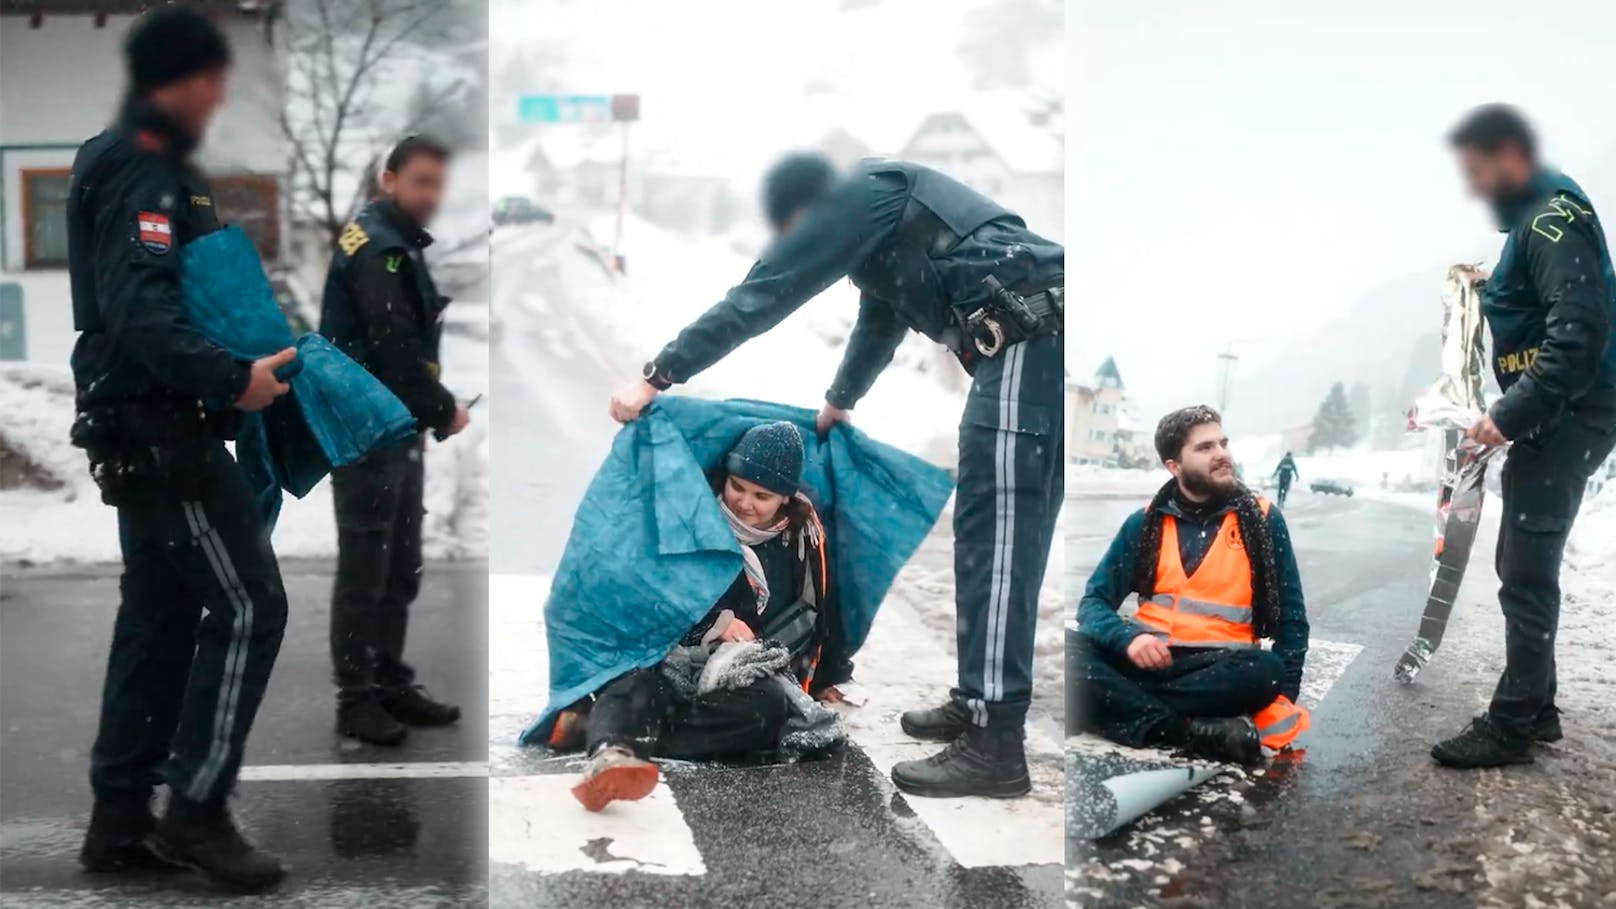 Polizei versorgt Klima-Kleber bei Blockade mit Decken